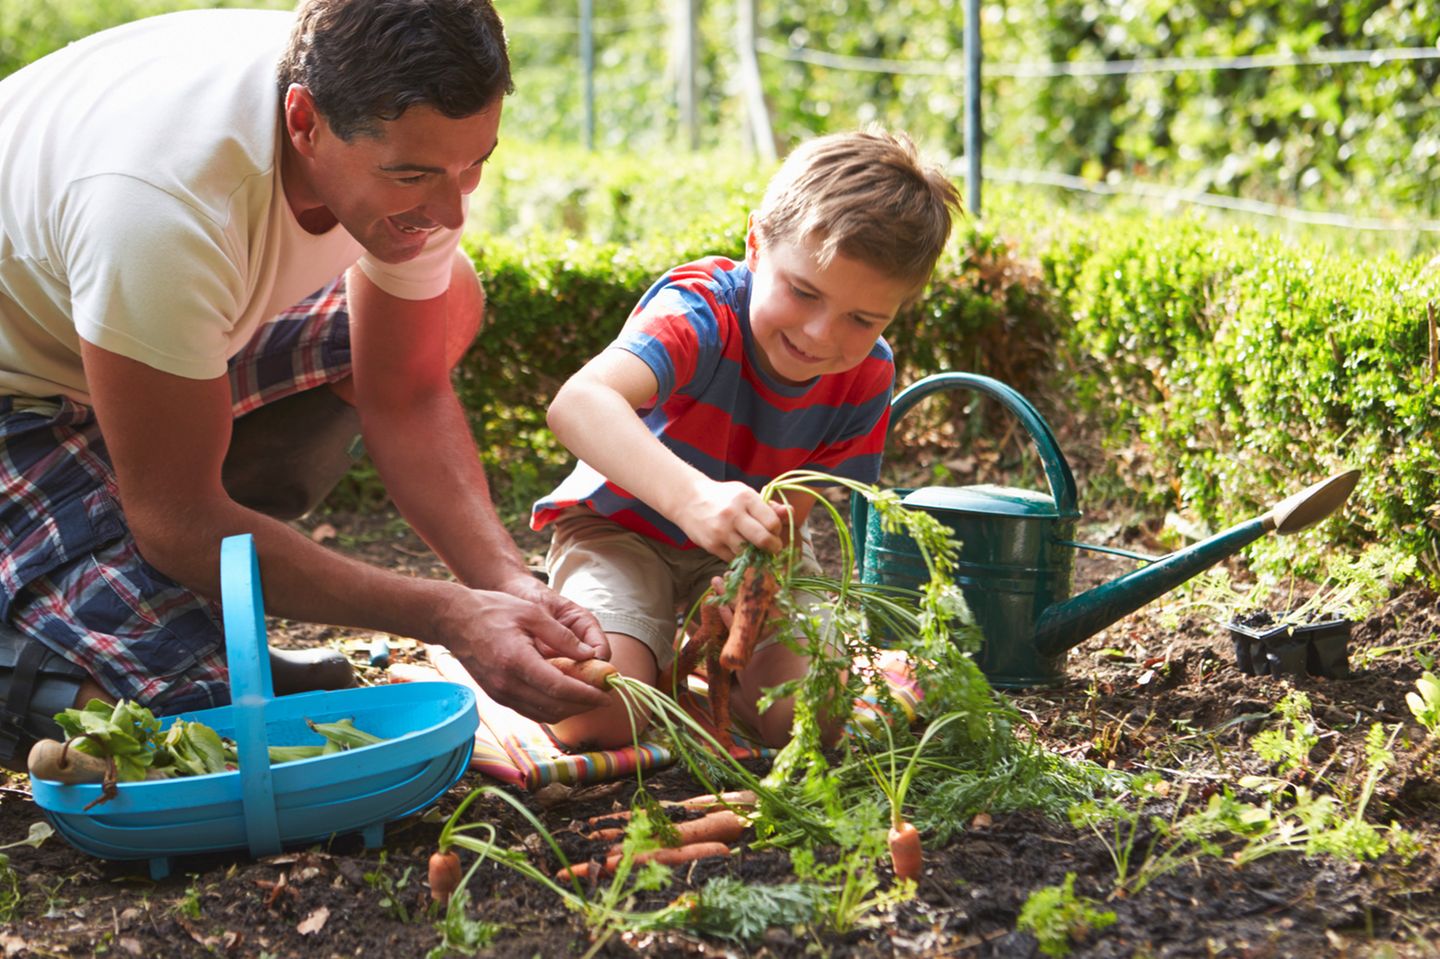 Vater mit Sohn bei der Gartenarbeit, ernten Karotten